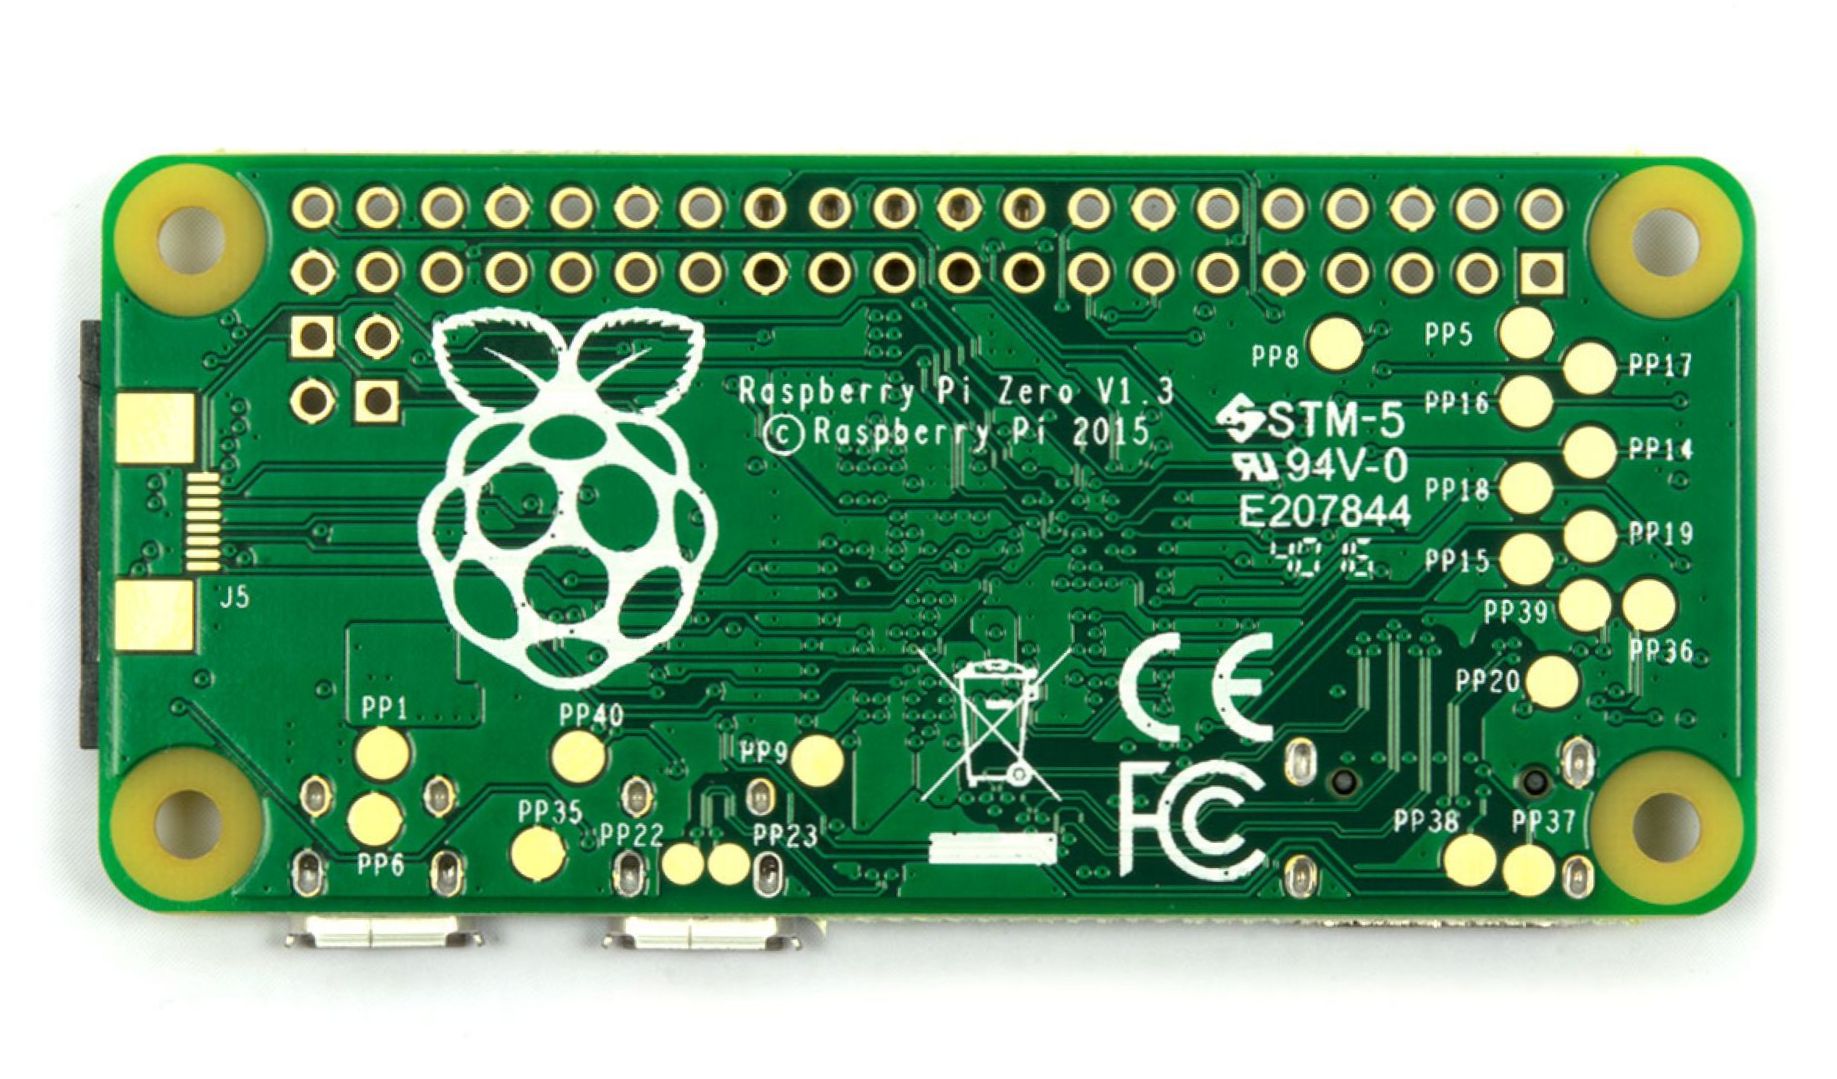 Raspberry Pi Zero V1